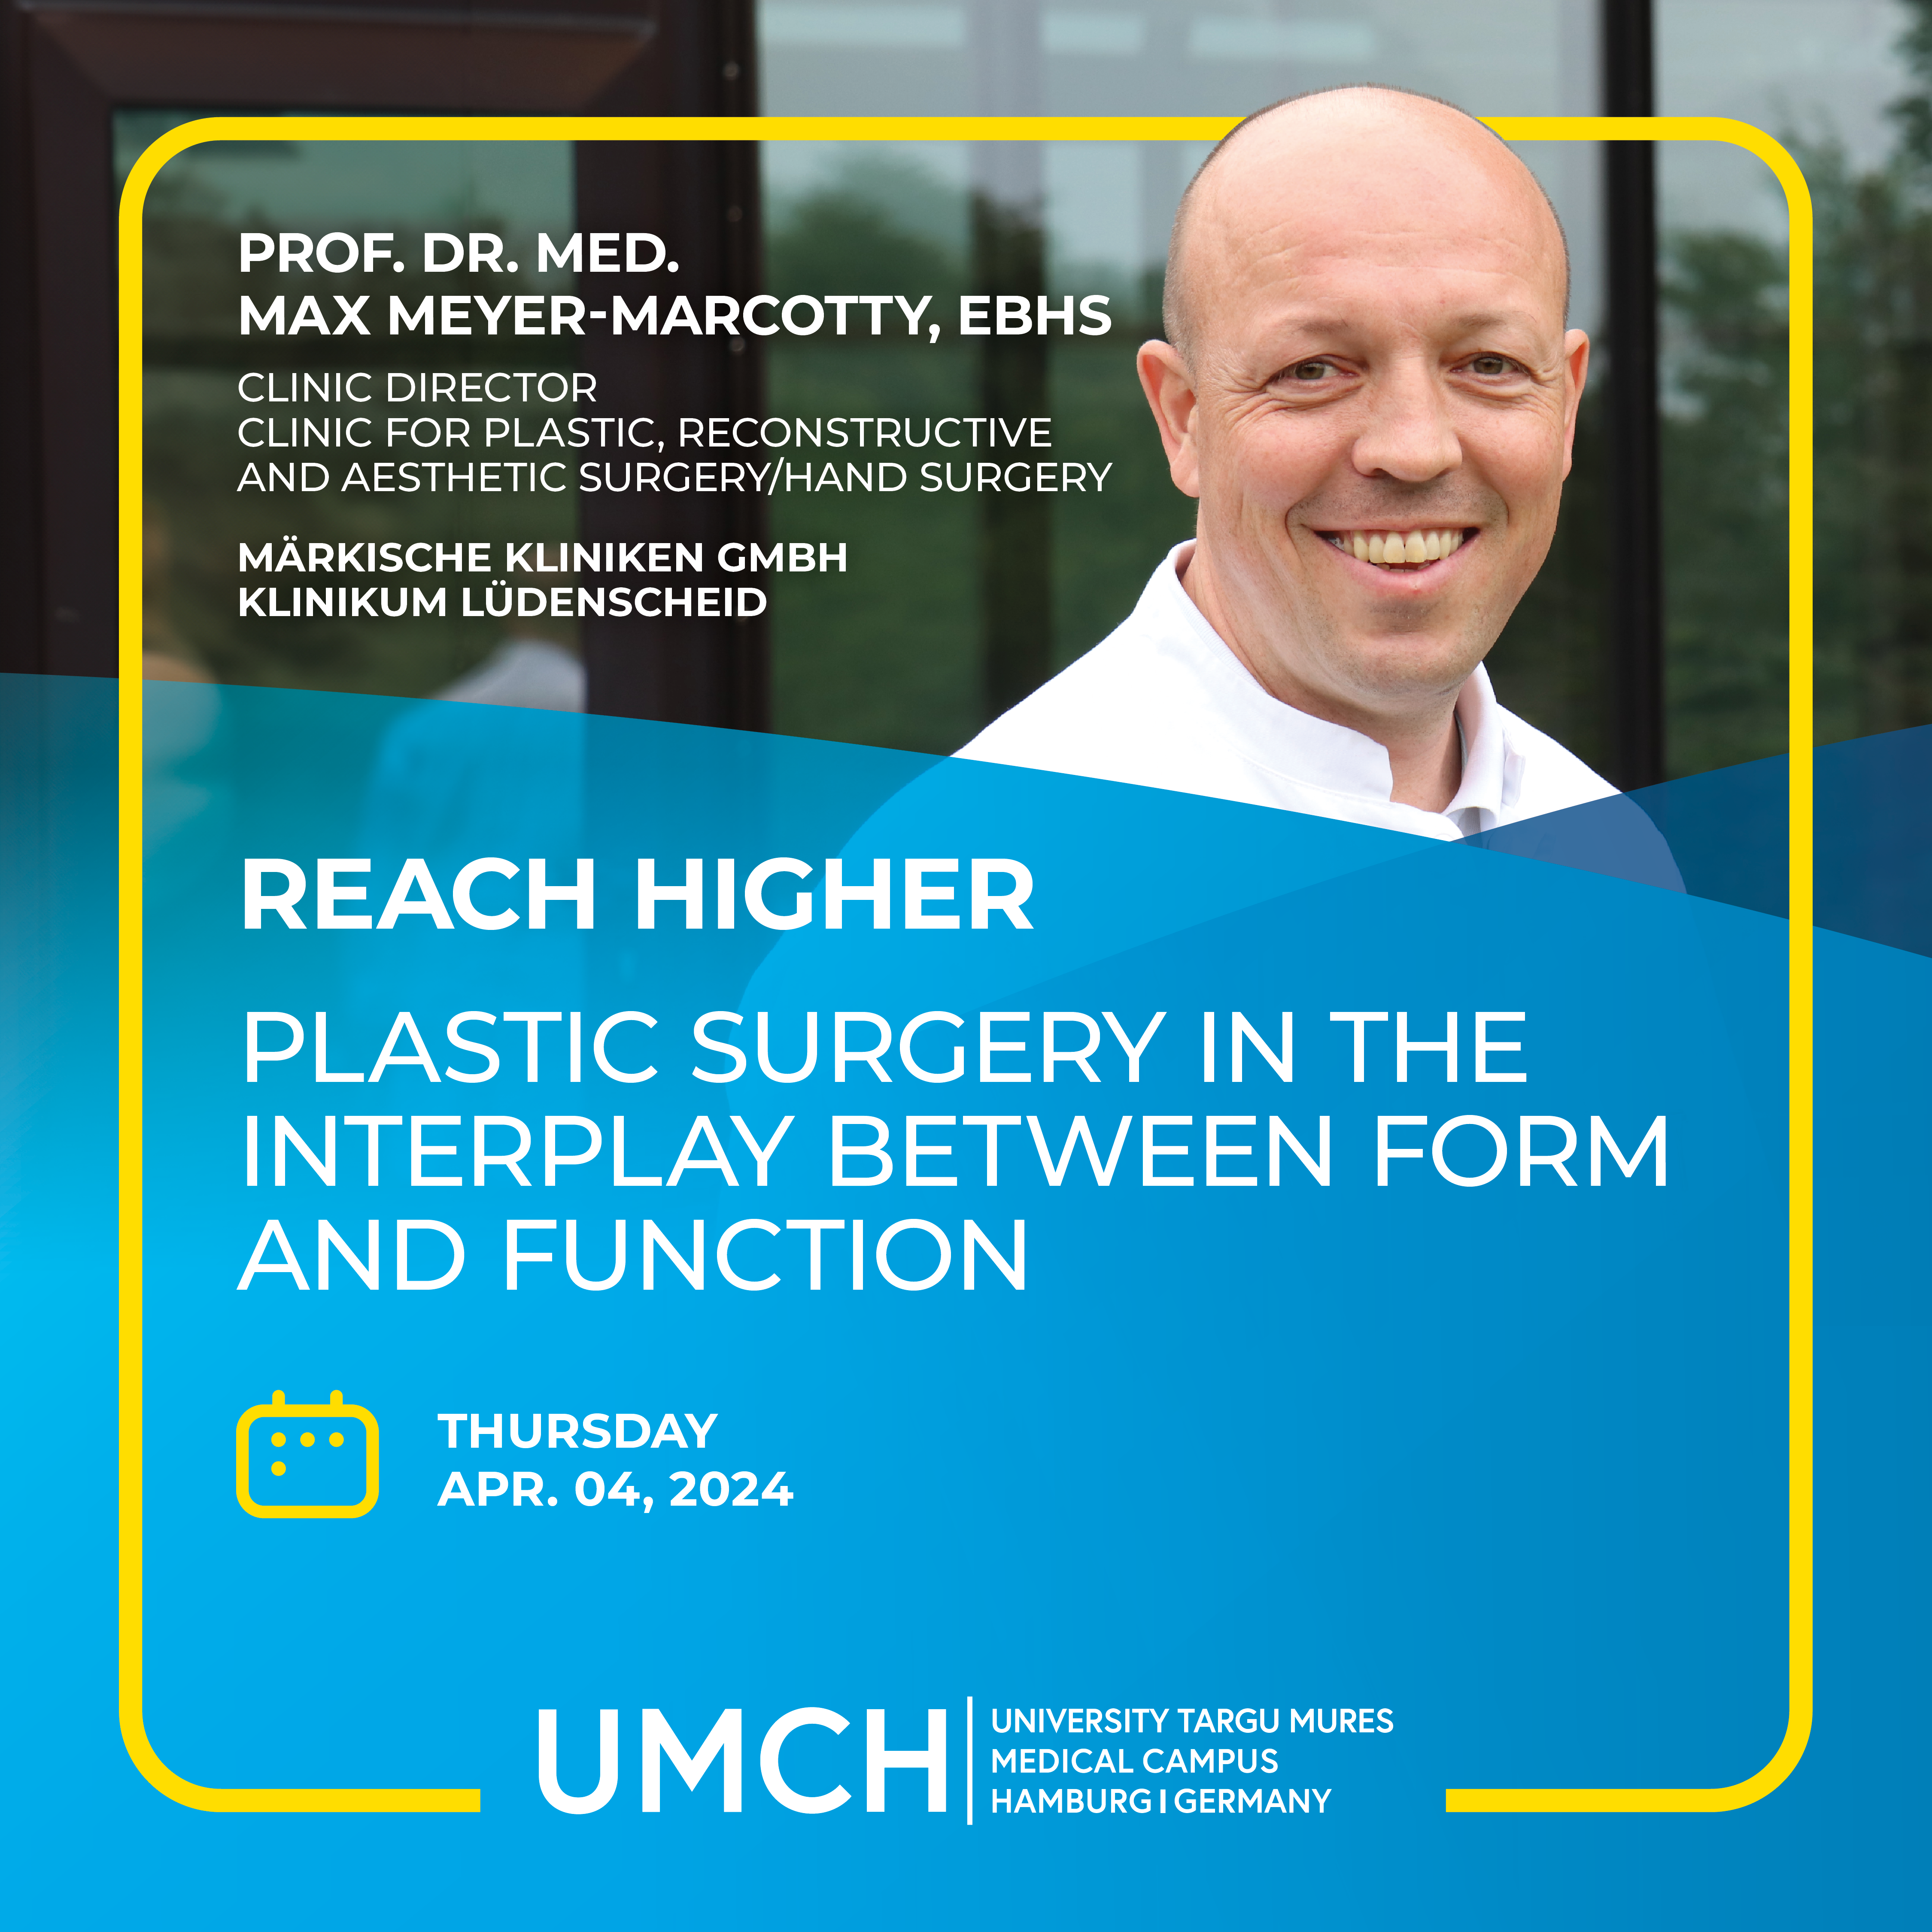 UMCH Open Campus Day